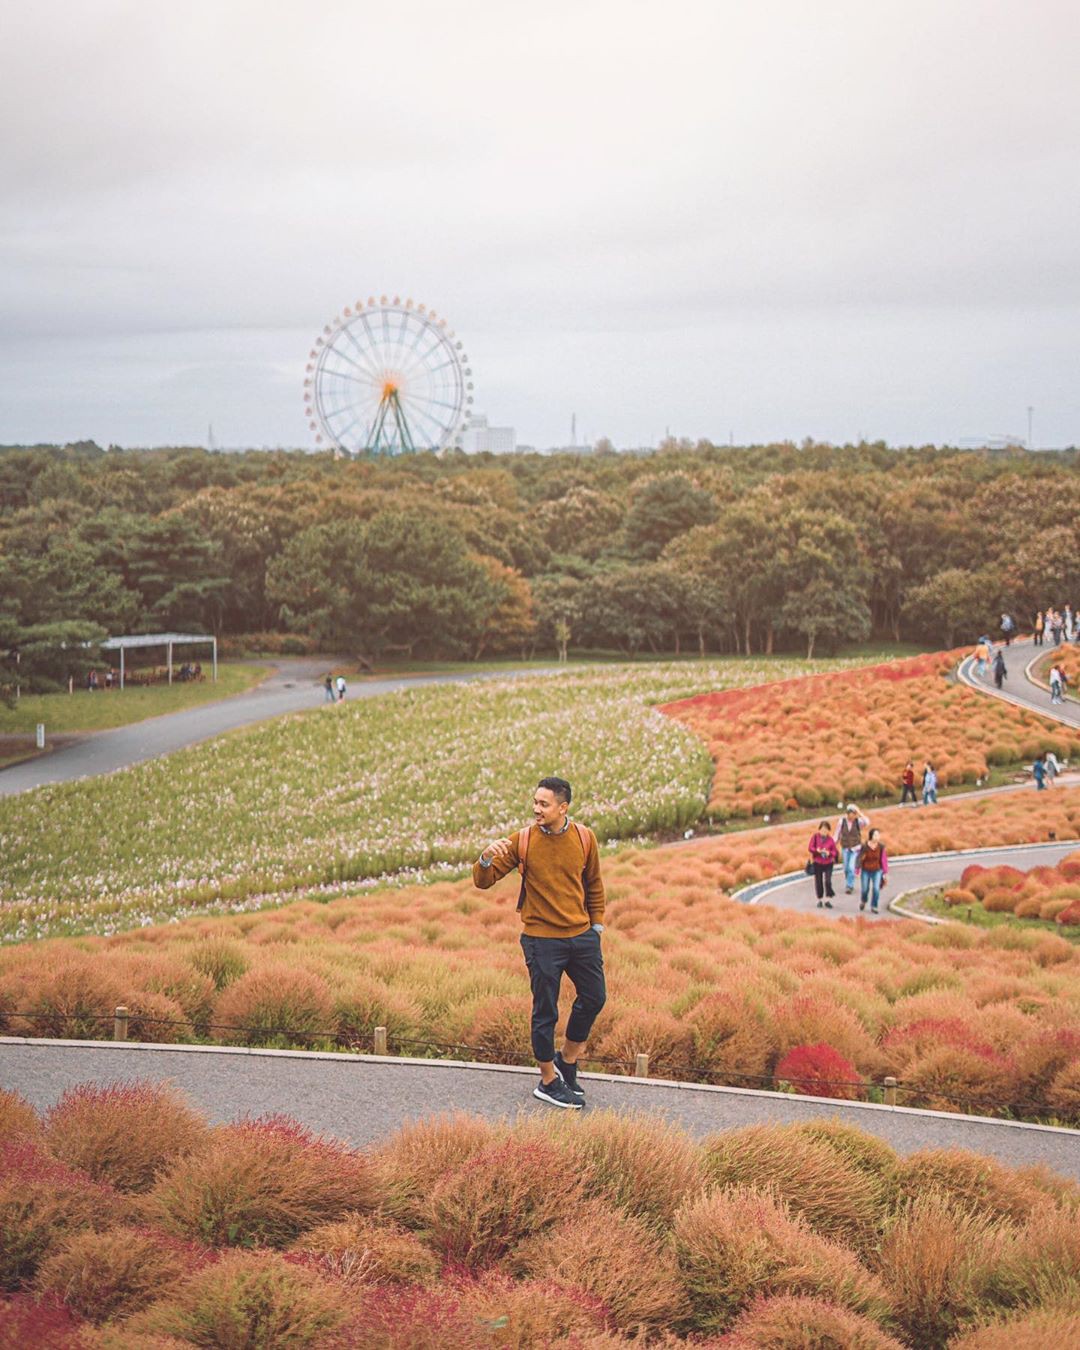 Đẹp nhất Nhật Bản mùa này chính là đồi cỏ Kochia đỏ rực, du khách đua nhau check-in đông không thấy lối đi - Ảnh 9.